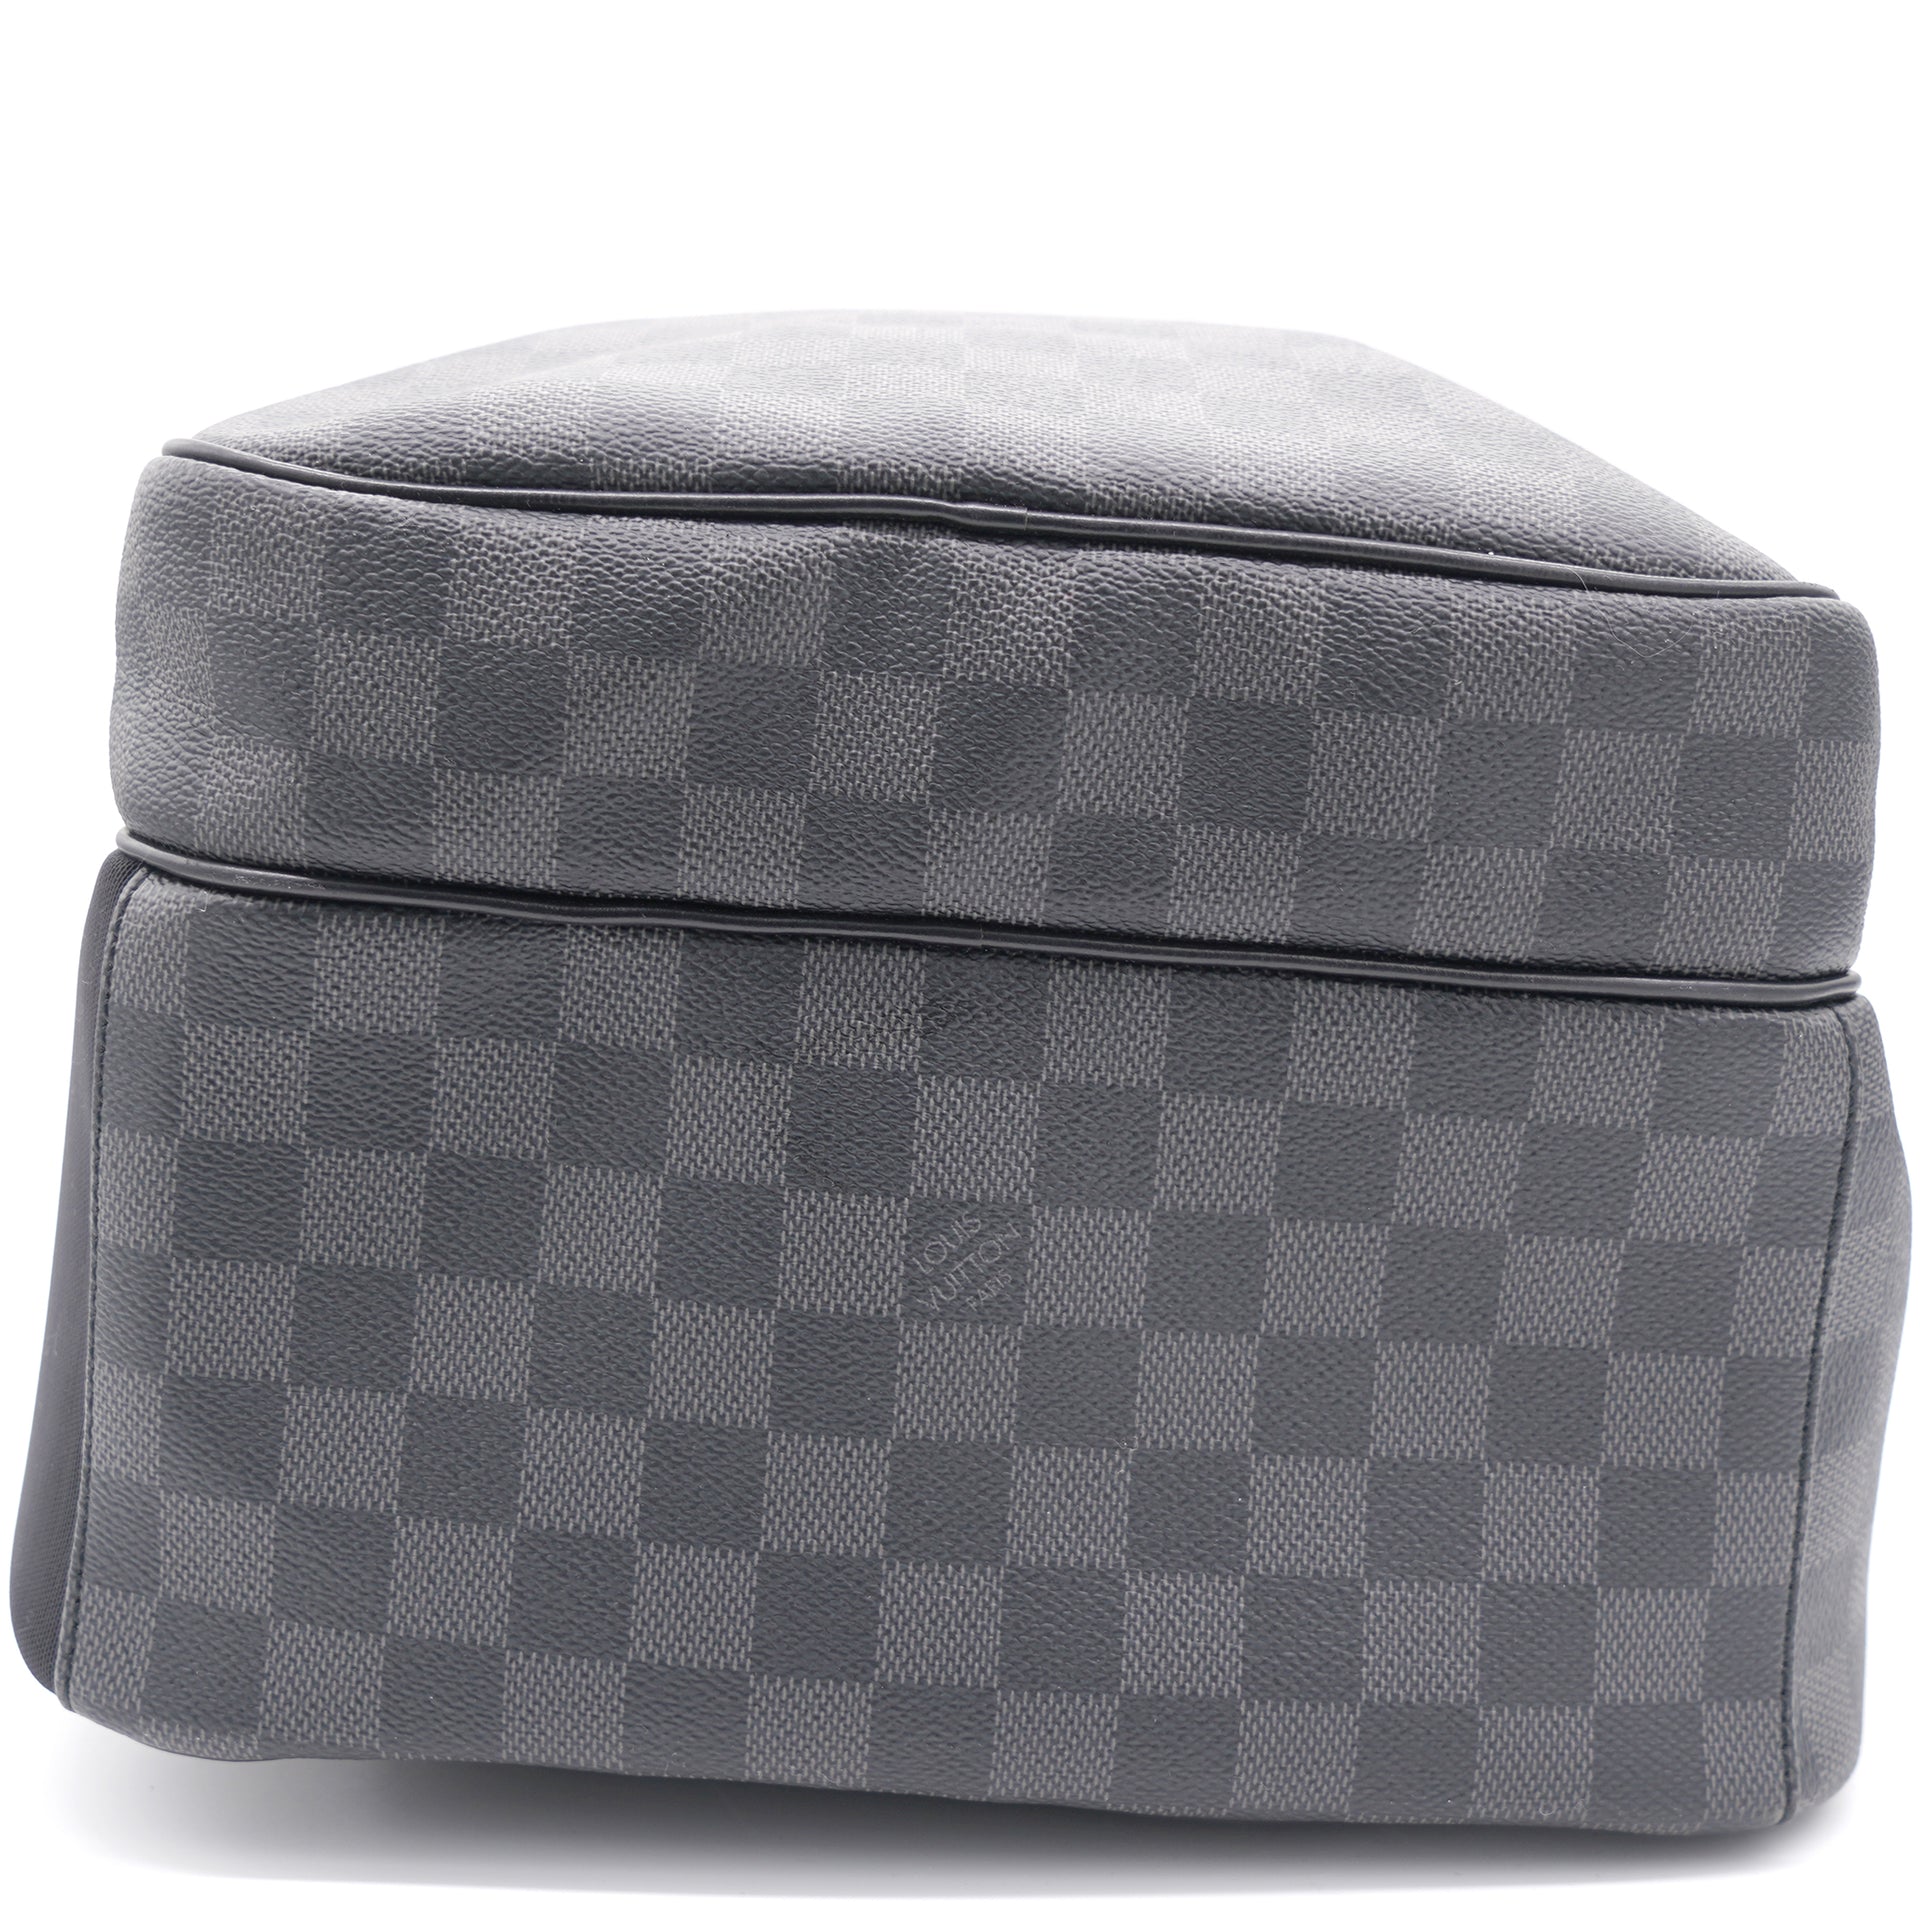 Louis Vuitton Damier Graphite Canvas Michael Backpack Bag